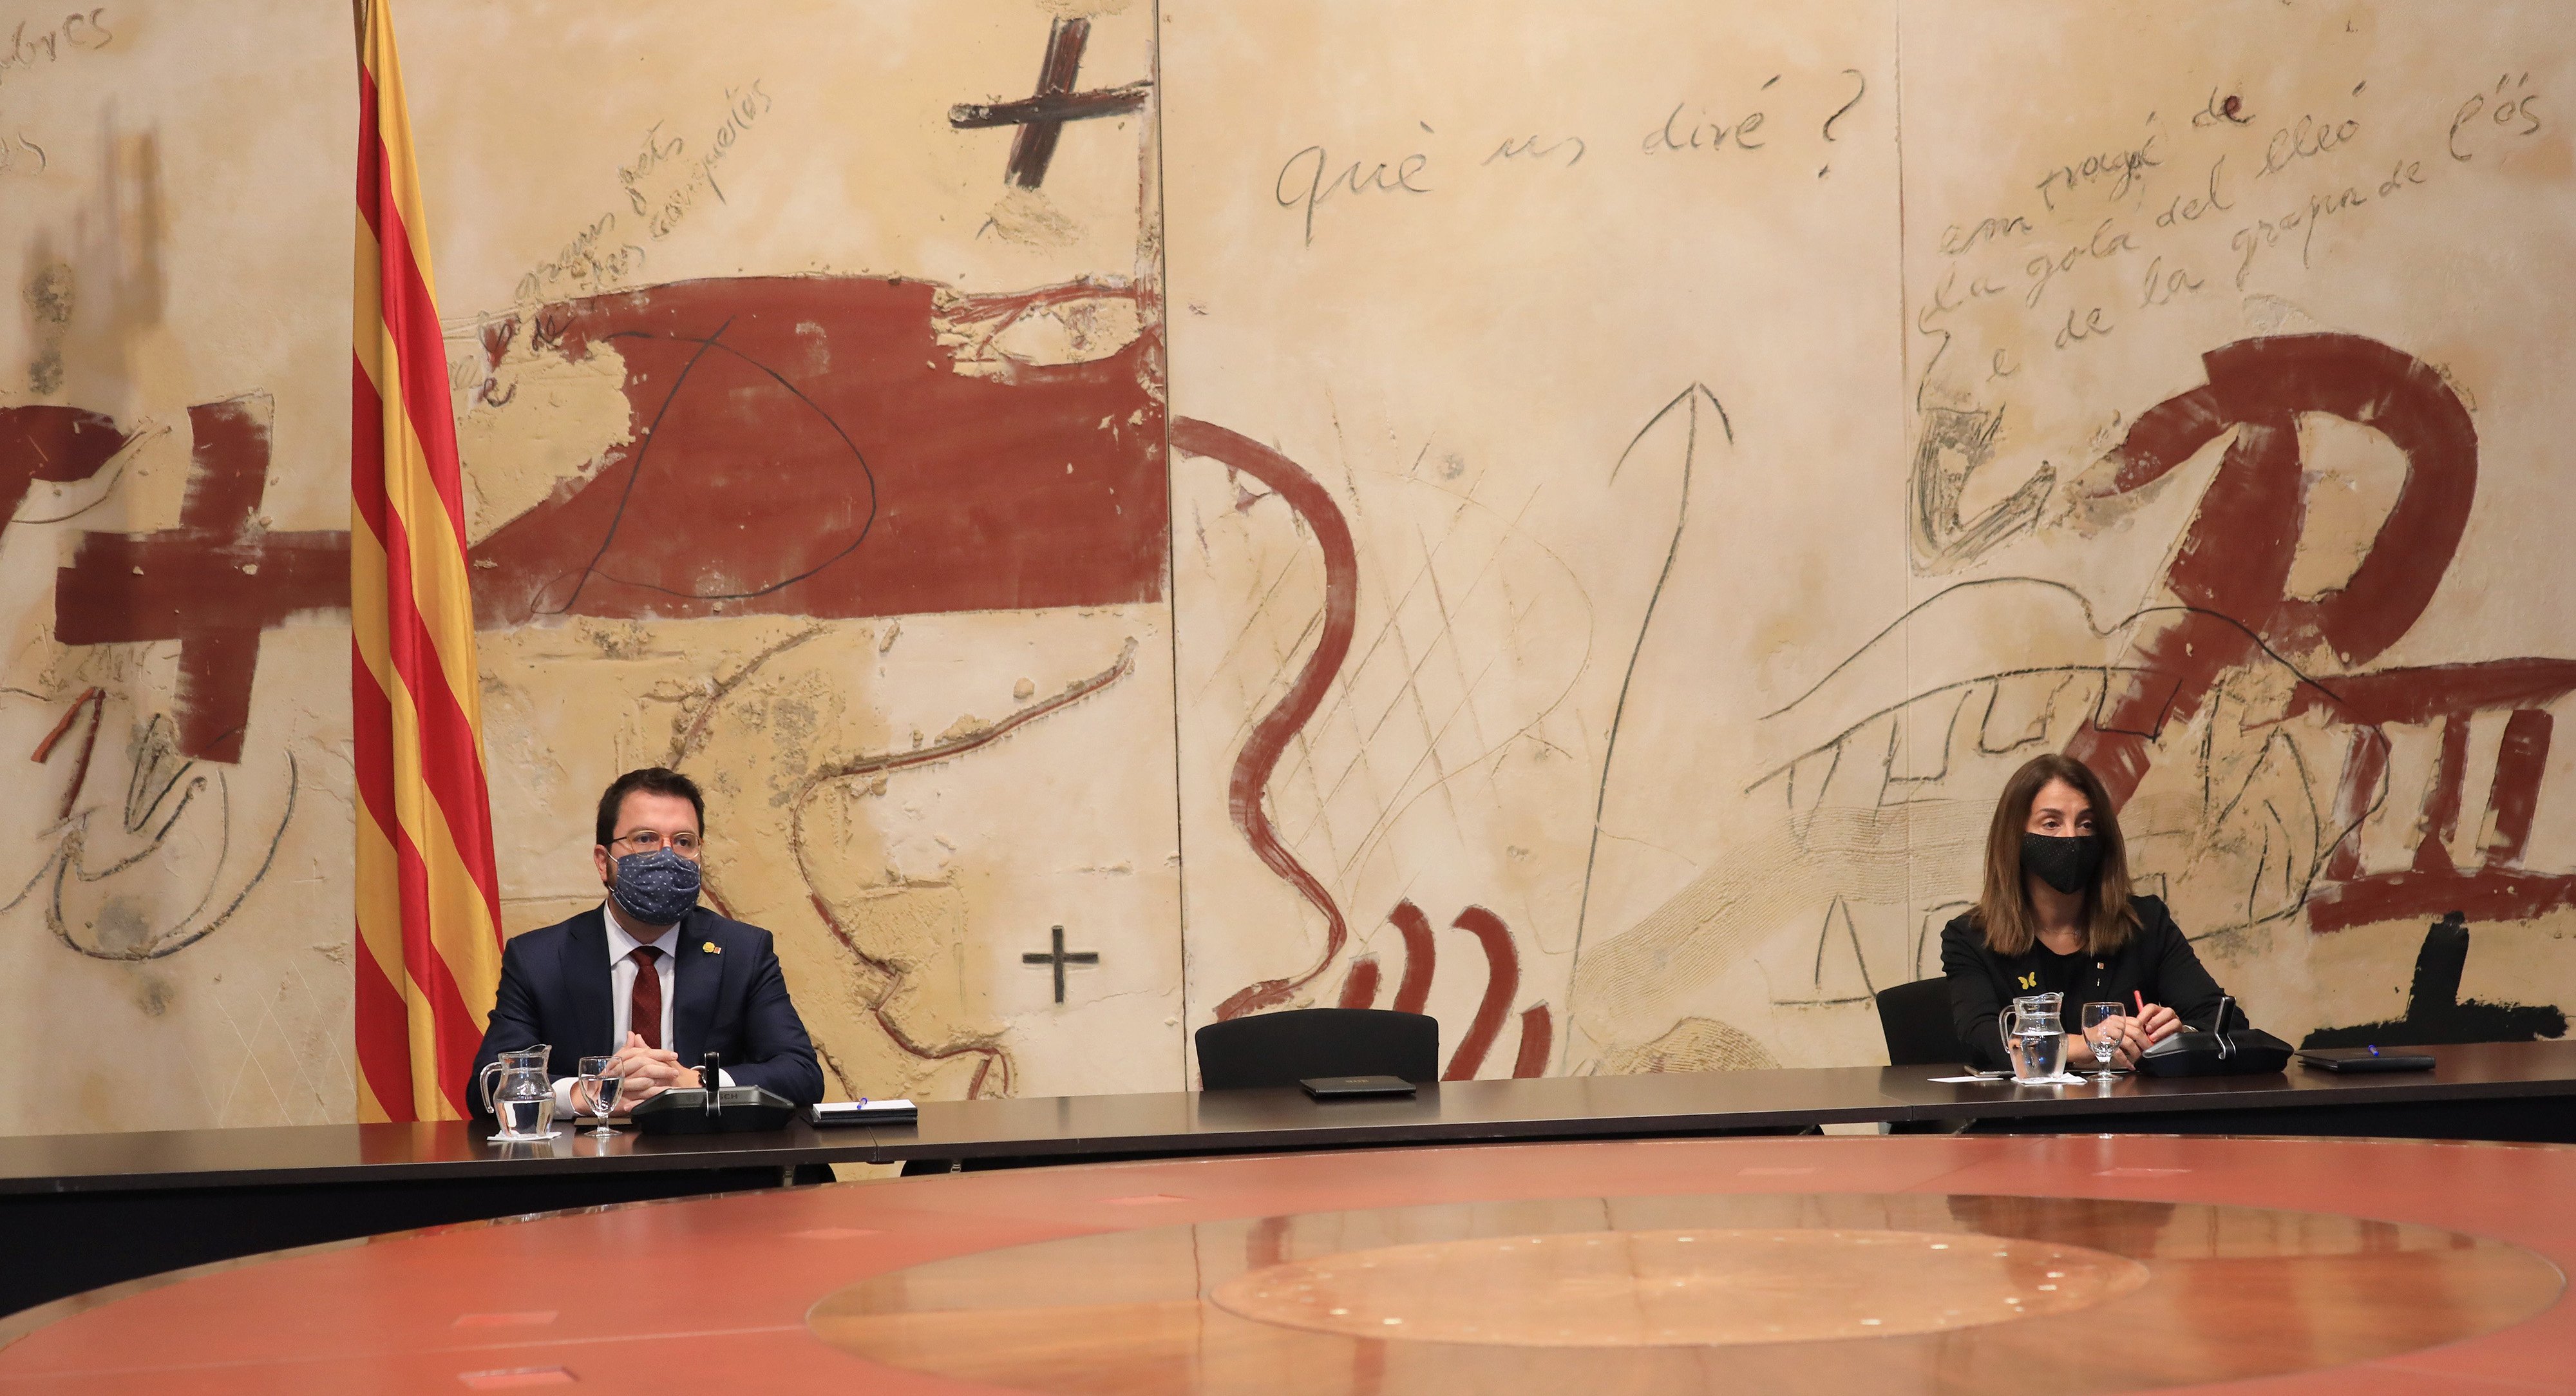 Aragonès substitueix Torra; la cadira del president, buida